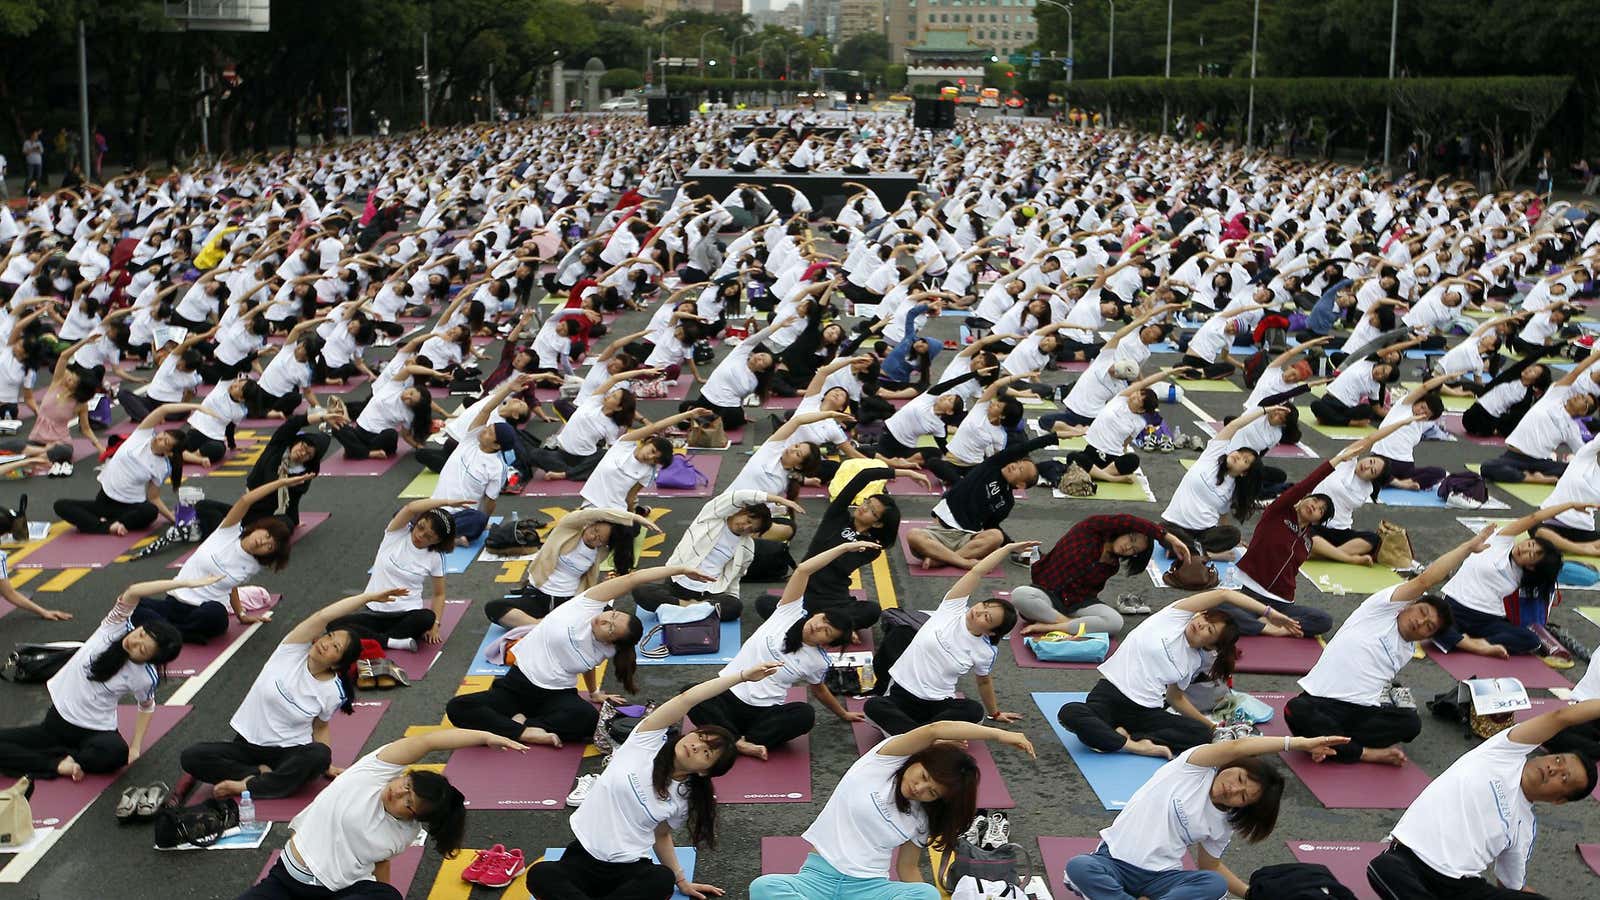 Iyengar helped bring yoga to the masses around the world.